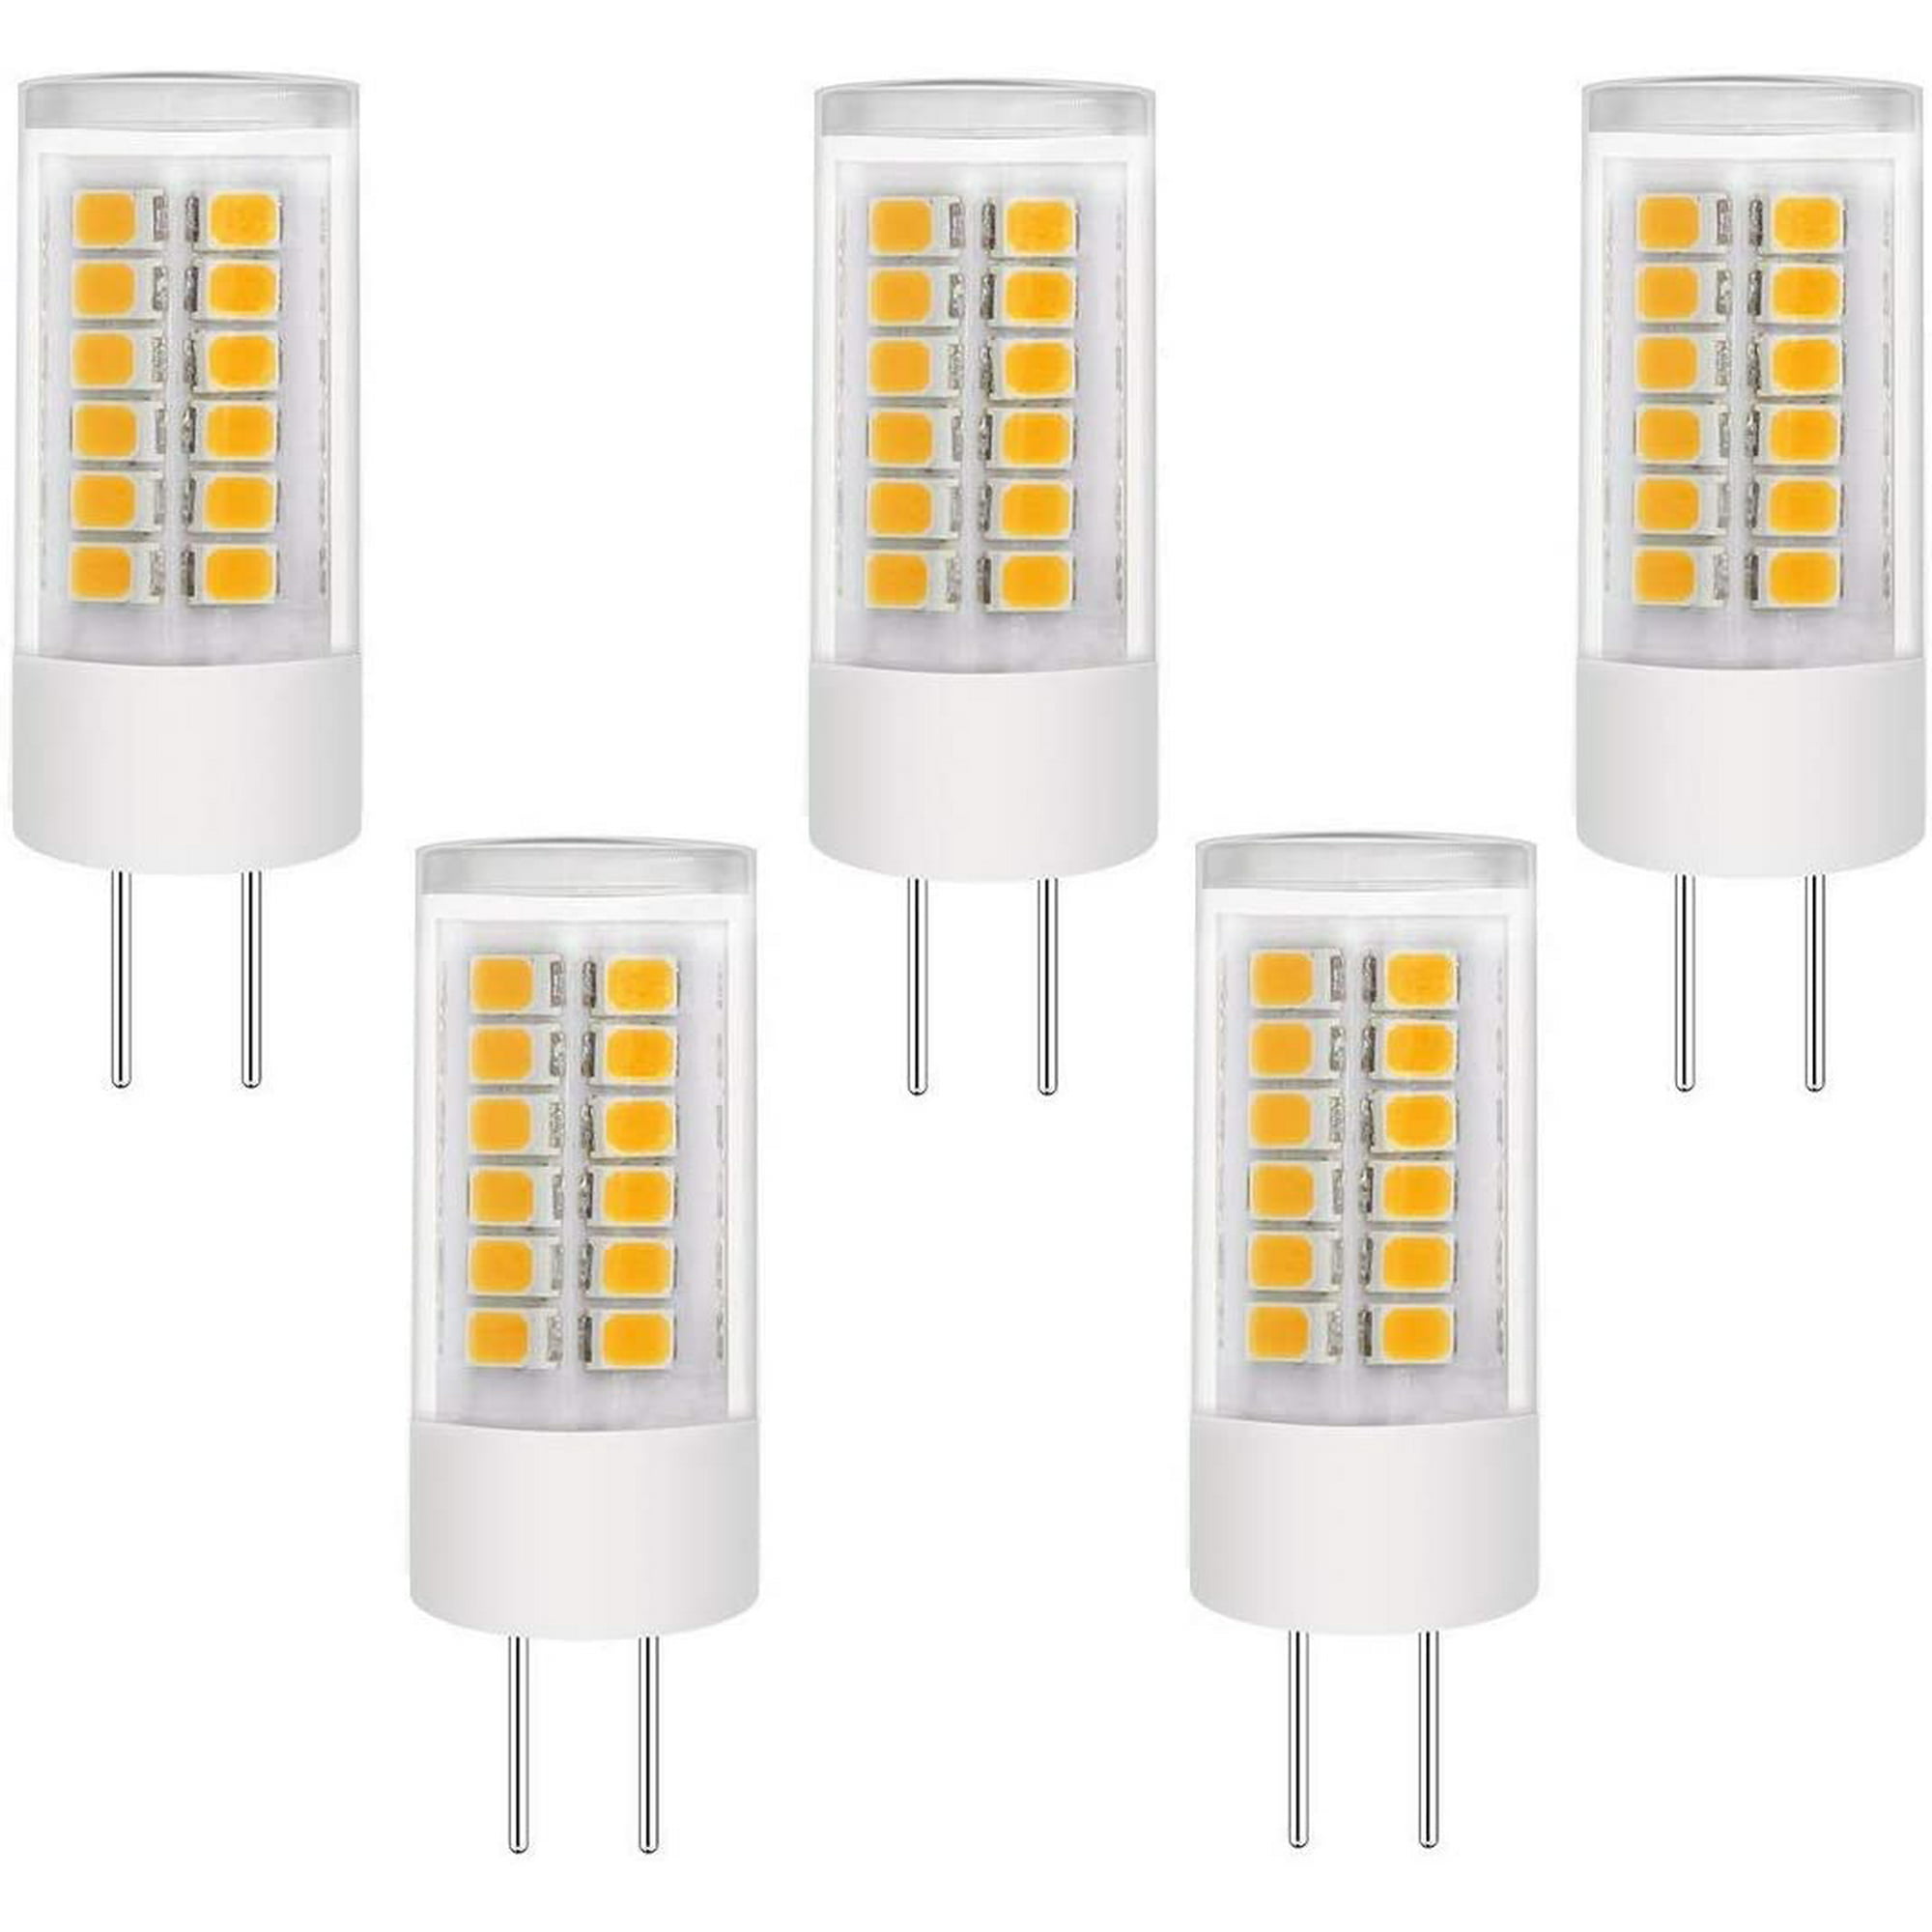 G4 LED Bulb 3W Bi-Pin LED Light Bulb G4 3w LED Warm White Light Lamps AC/DC 12V,20W-30W Halogen Equivalent 5 Pack 3 Watt g4 LED Bulb Warm White 3000K for Landscape Home Lighting,T3 JC Type 